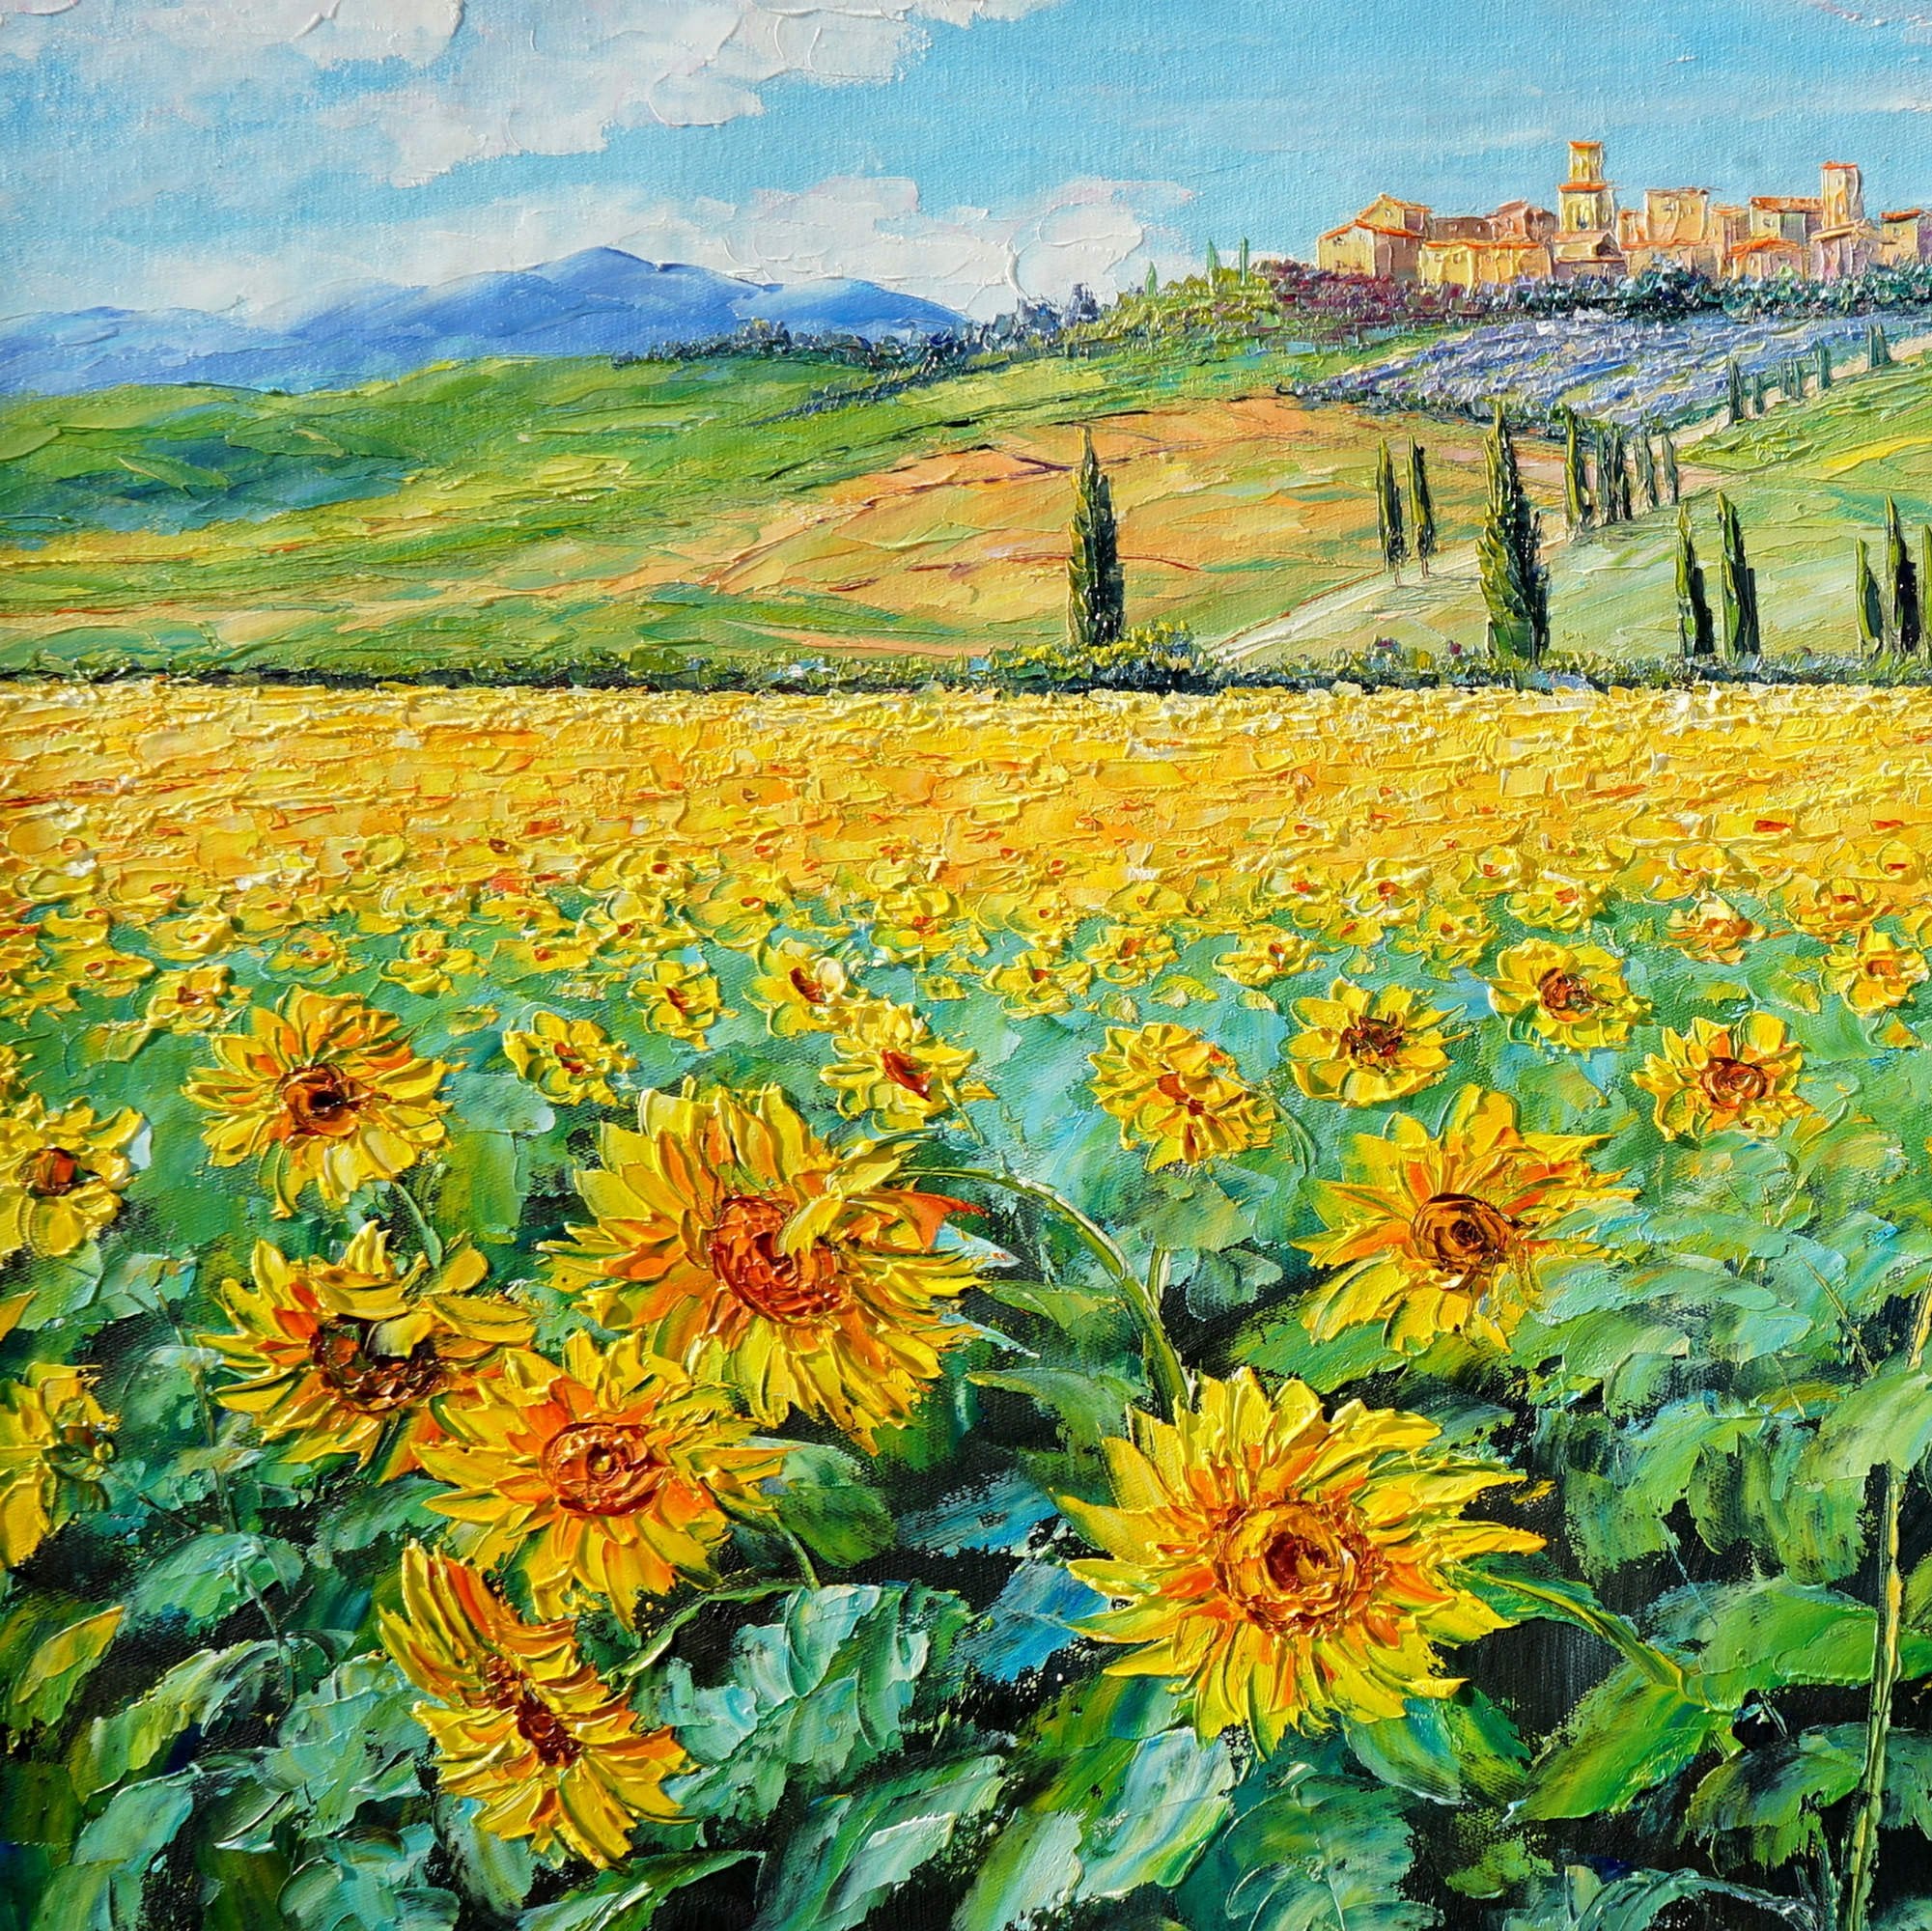 Quadro rappresentante un campo di girasoli in Toscana con un borgo sullo sfondo